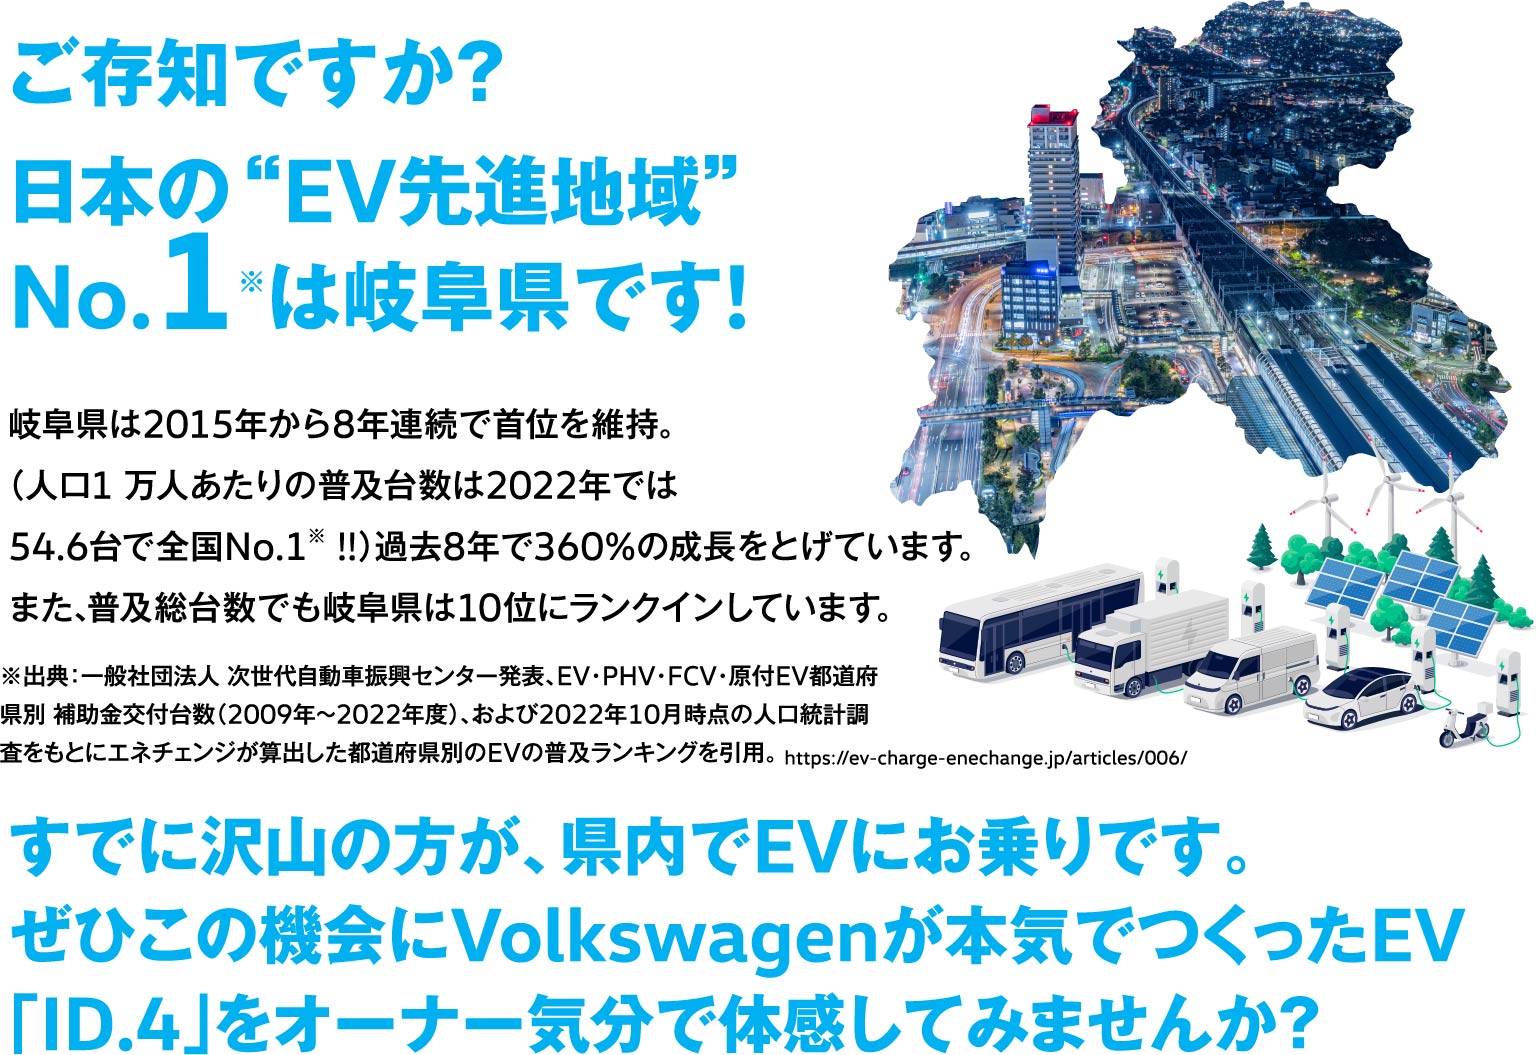 ご存知ですか？日本のEV先進地域No1は岐阜県です！